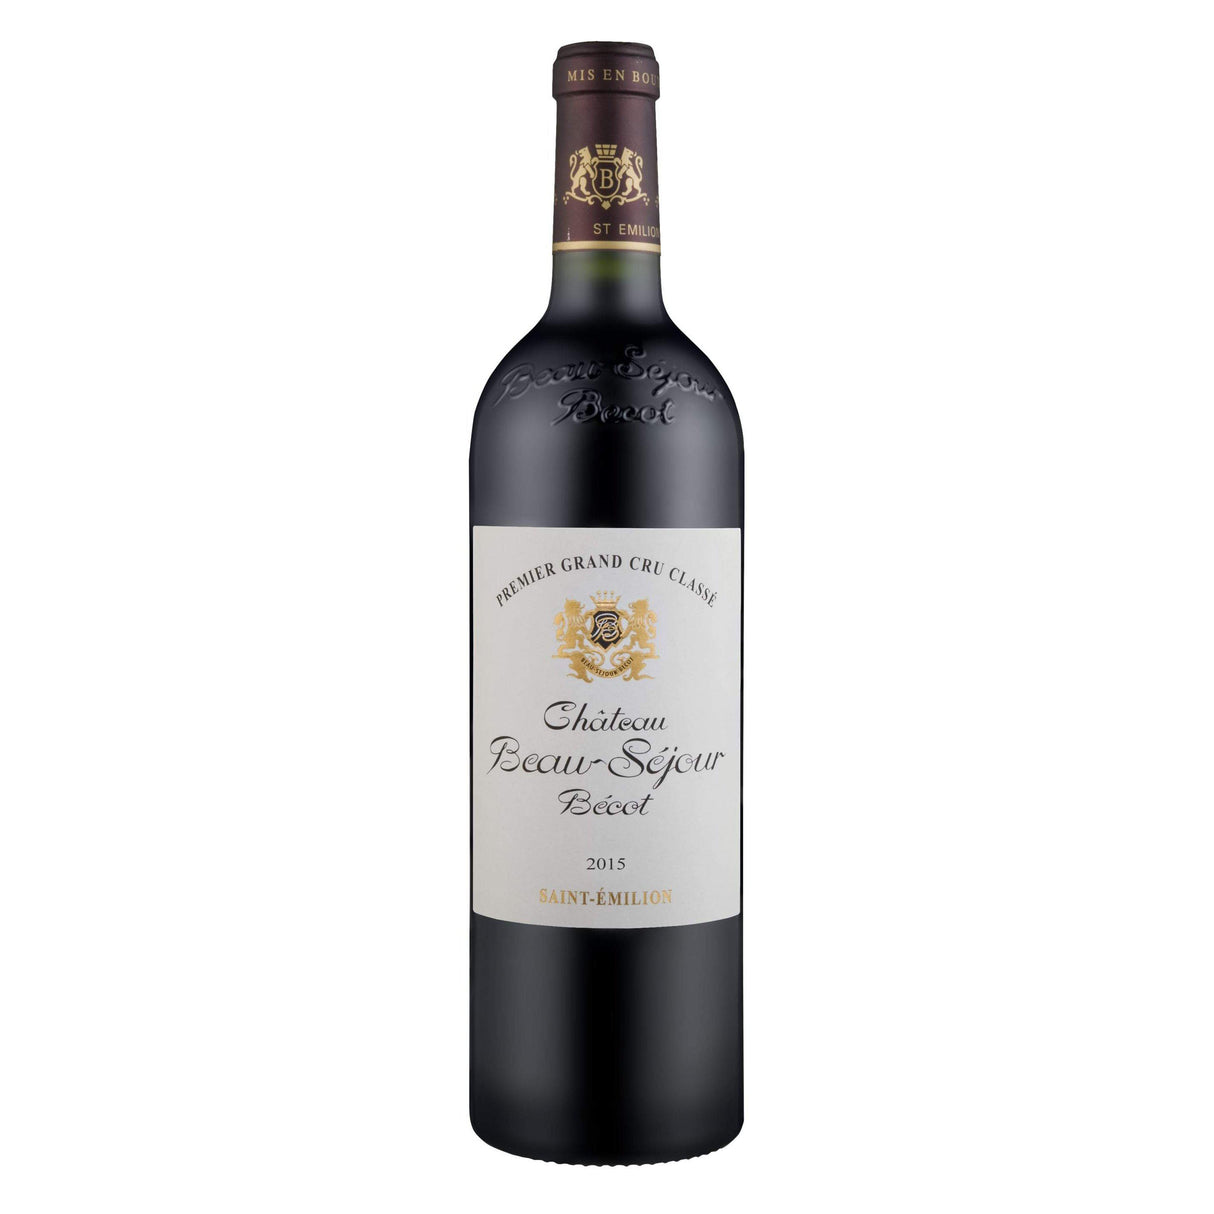 Chateau Beau-Séjour Bécot, St. Emilion Grand Cru Classé 2015-Red Wine-World Wine